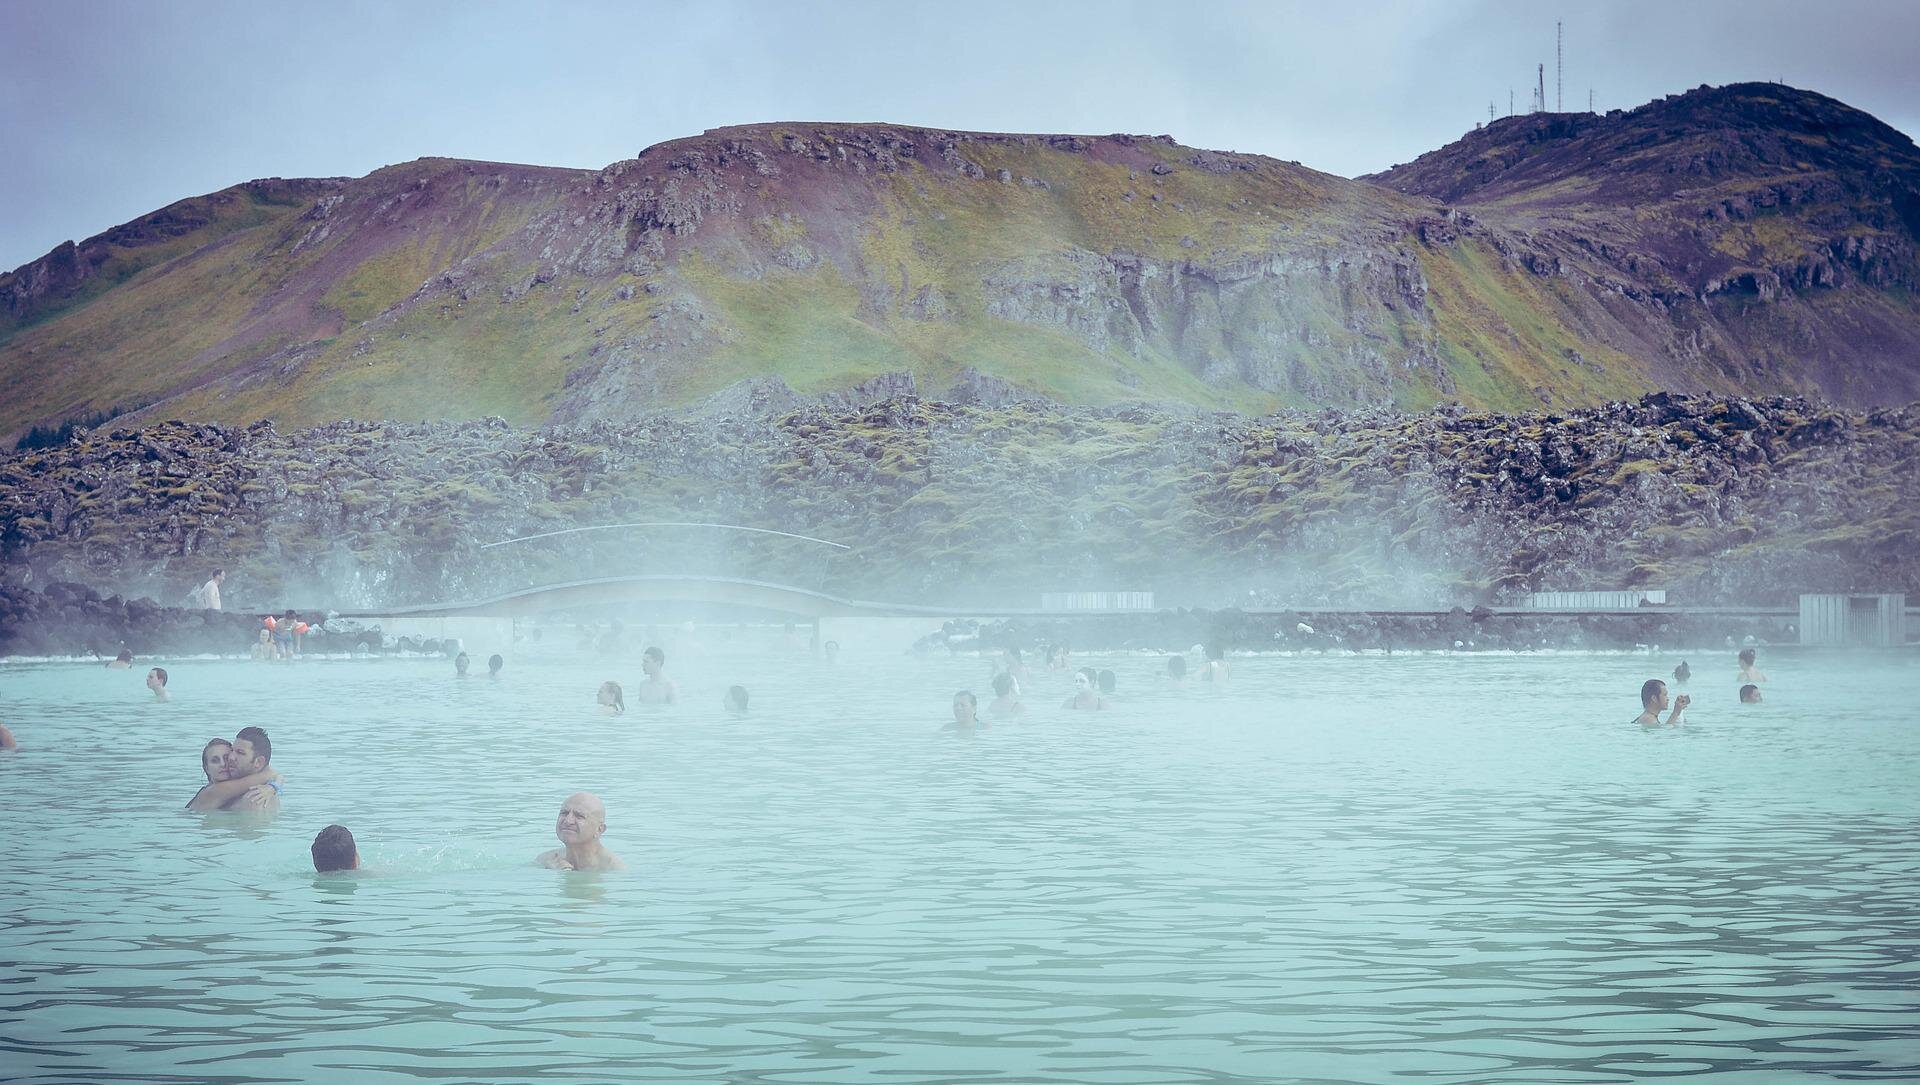 Zdjęcie przedstawia Błękitną Lagunę na Islandii. Nad powierzchnią wody unosi się gęsta para, na pierwszym planie widoczni są kąpiący się w wodzie ludzie. W tle za nimi znajduje się górzyste wybrzeże. Niebo na zdjęciu jest pochmurne, w szaroniebieskim kolorze.